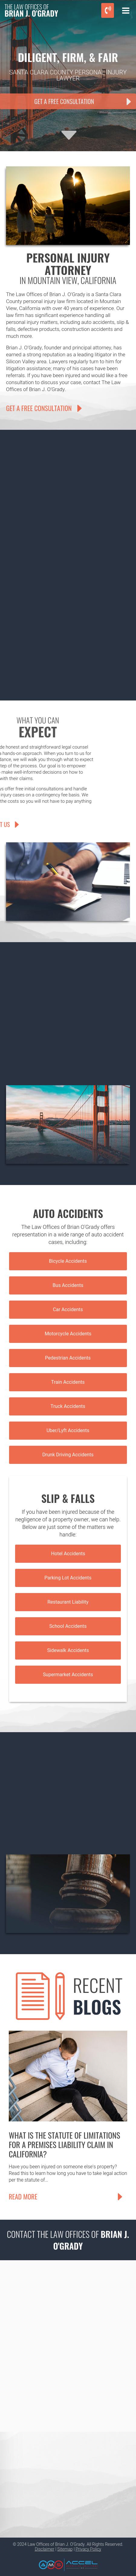 Brian J. O'Grady - Mountain View CA Lawyers